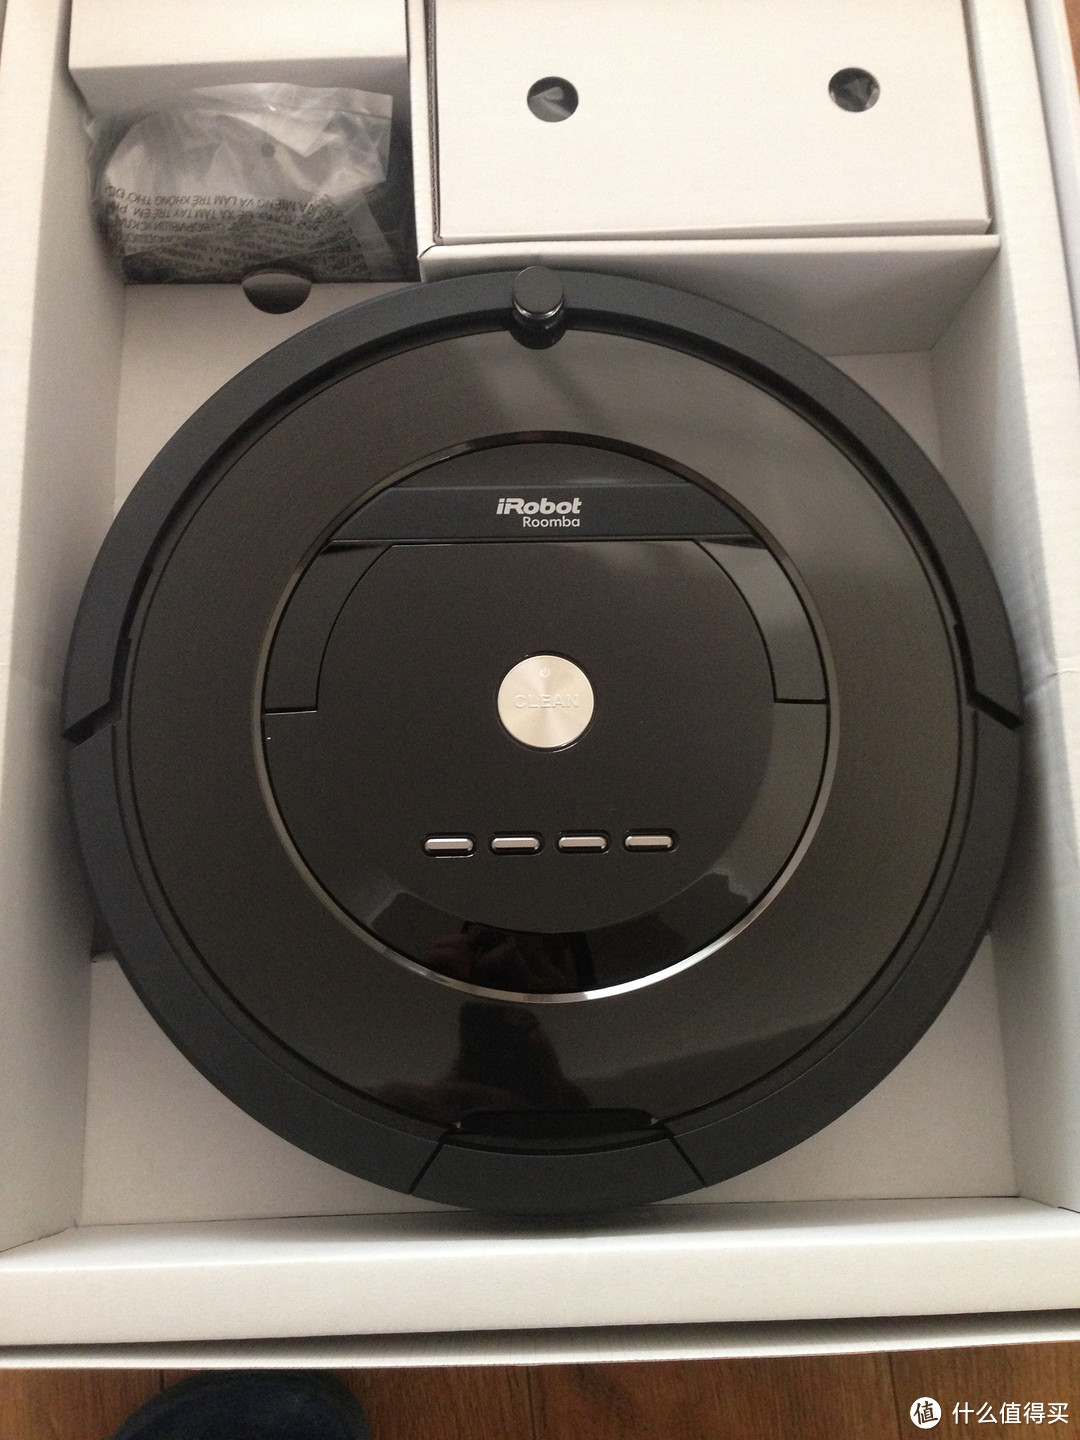 #本站首晒# iRobot Roomba 885 扫地机器人